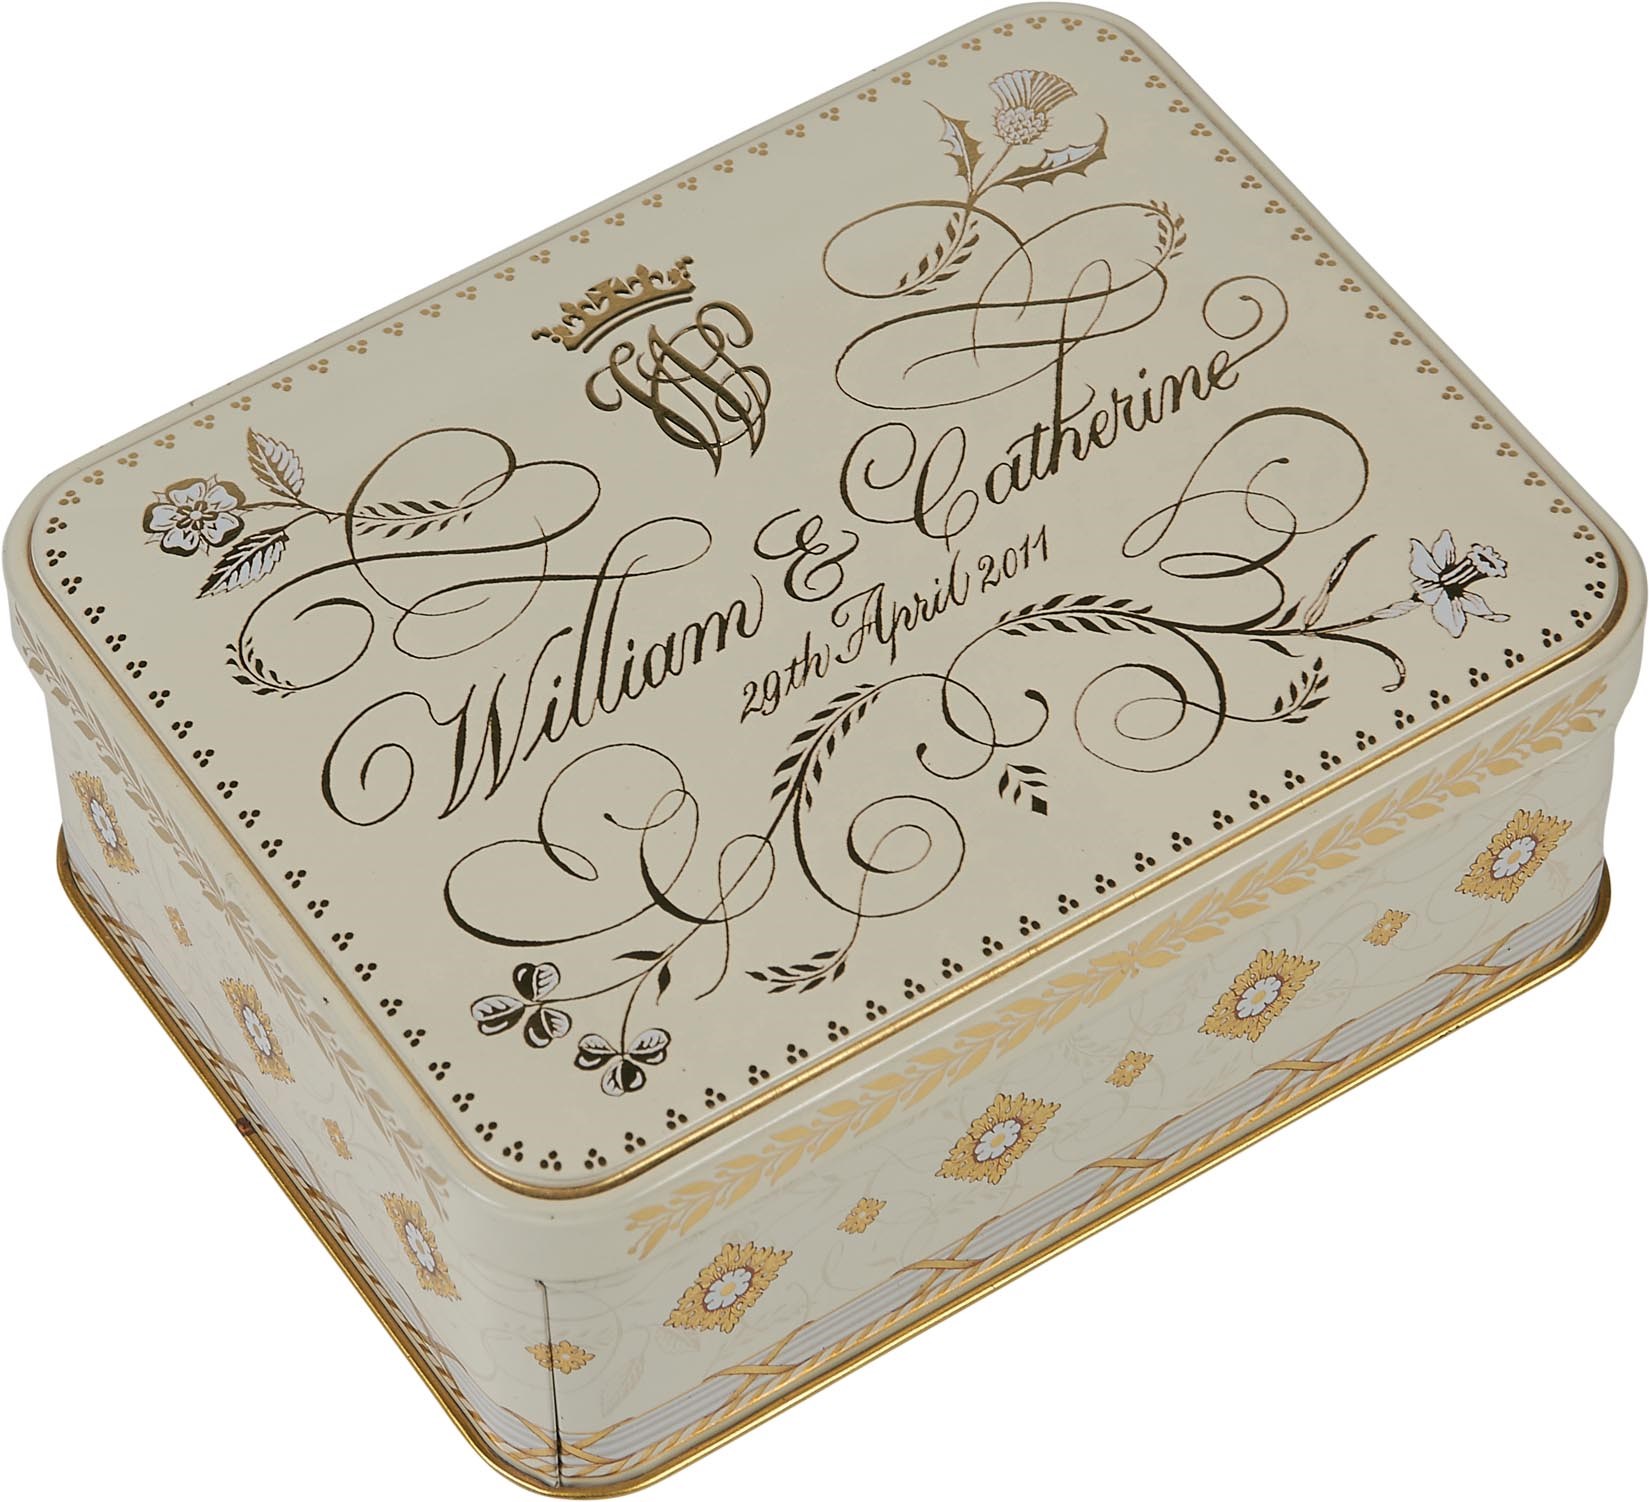 - 2011 Prince William & Catherine Middleton Slice of Wedding Cake.